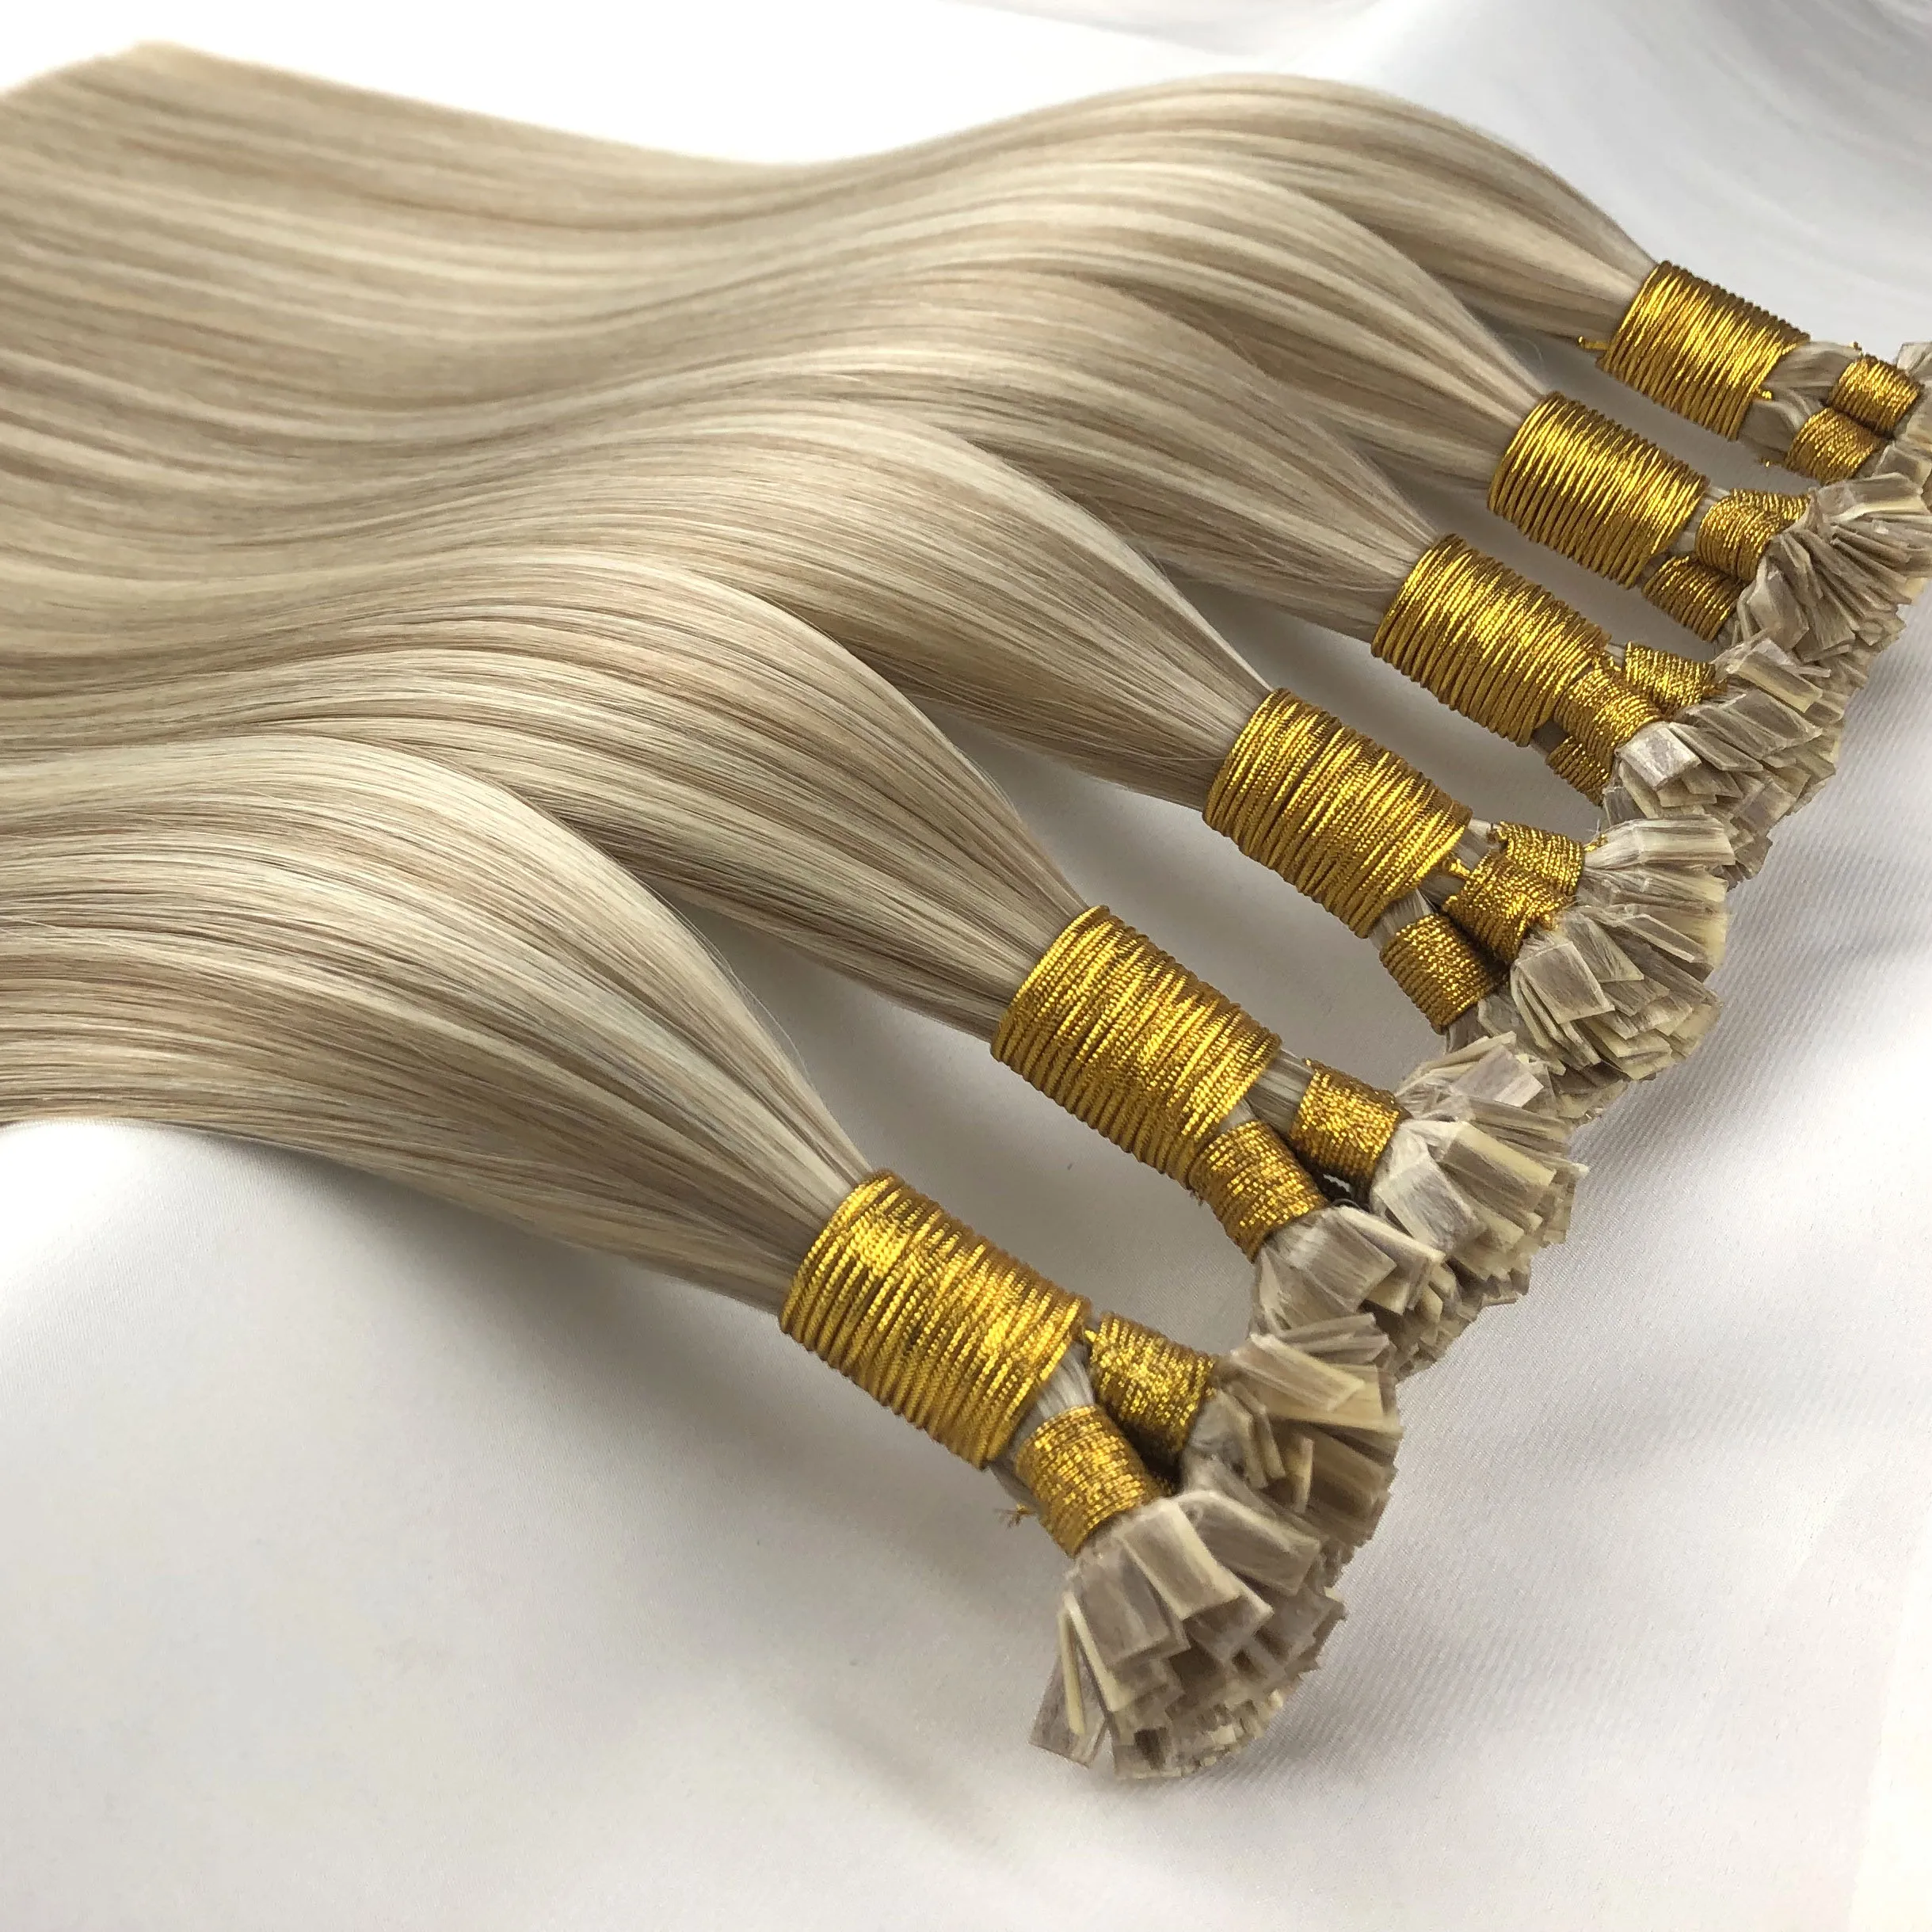 Extensões de cabelo de longa duração, estampa de cabelo com queratina desenhada dupla